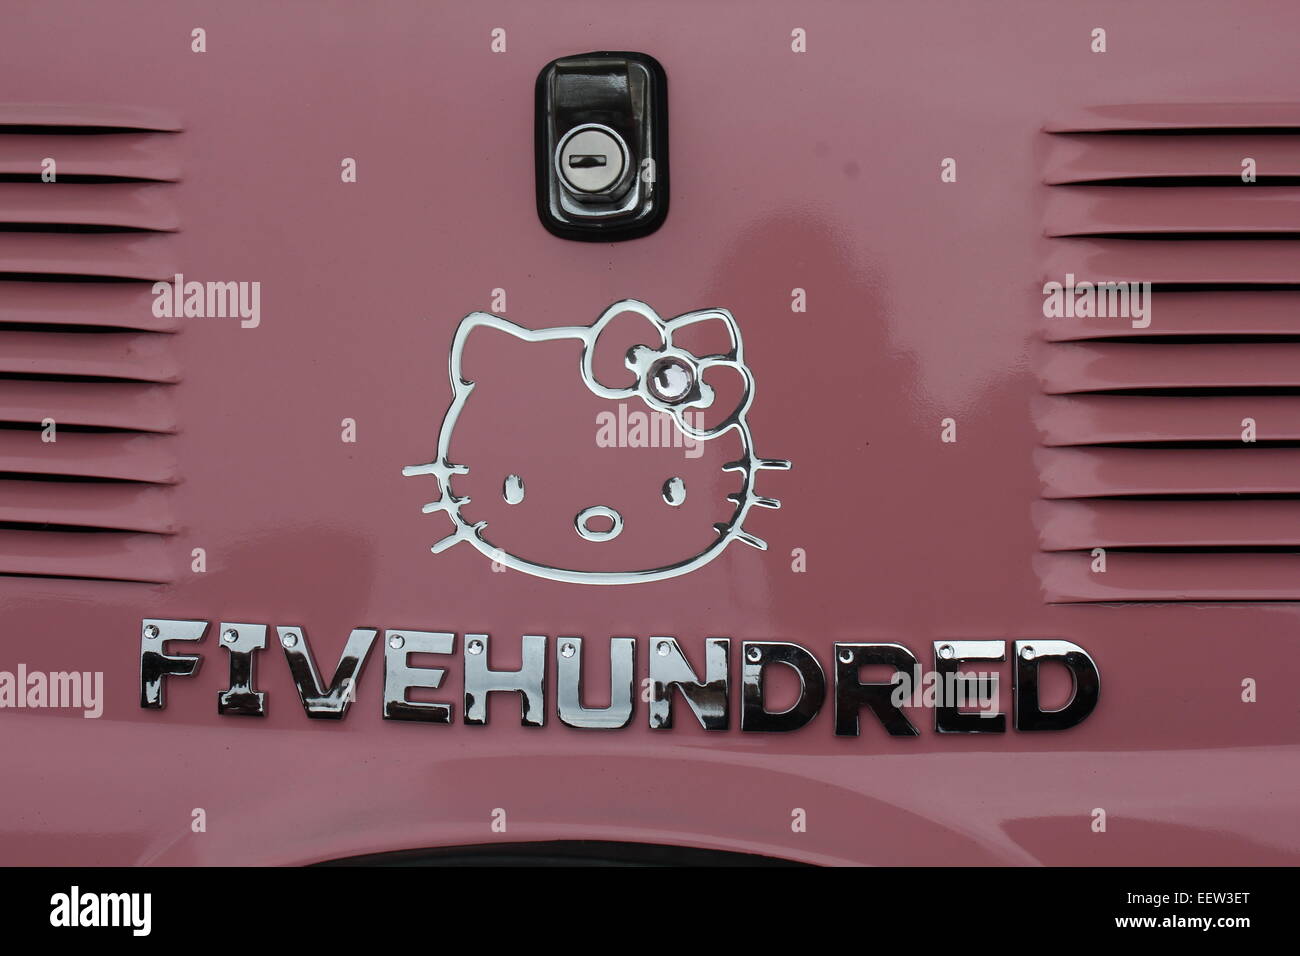 Fiat 500 avec un logo hello kitty et fivehundred écrit en lettres chromées Banque D'Images